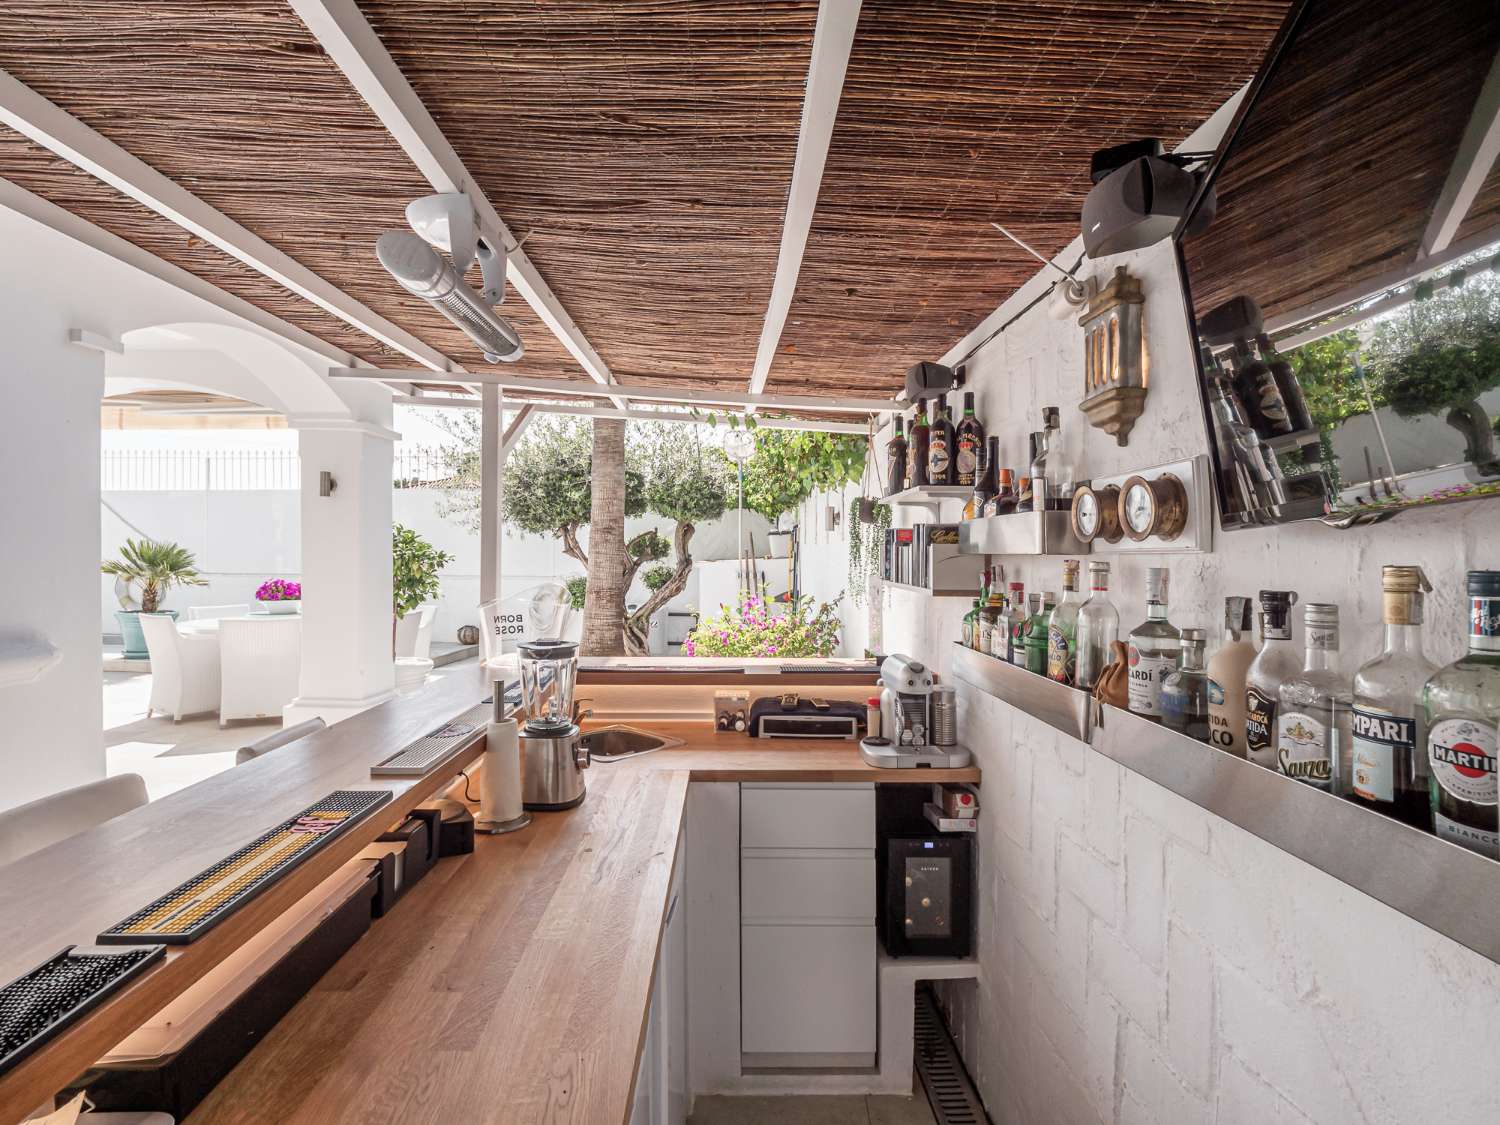 Tadelloses Design und Komfort durch! Holen Sie sich Ihren Kaffee und genießen Sie den warmen andalusischen Wohnstil!